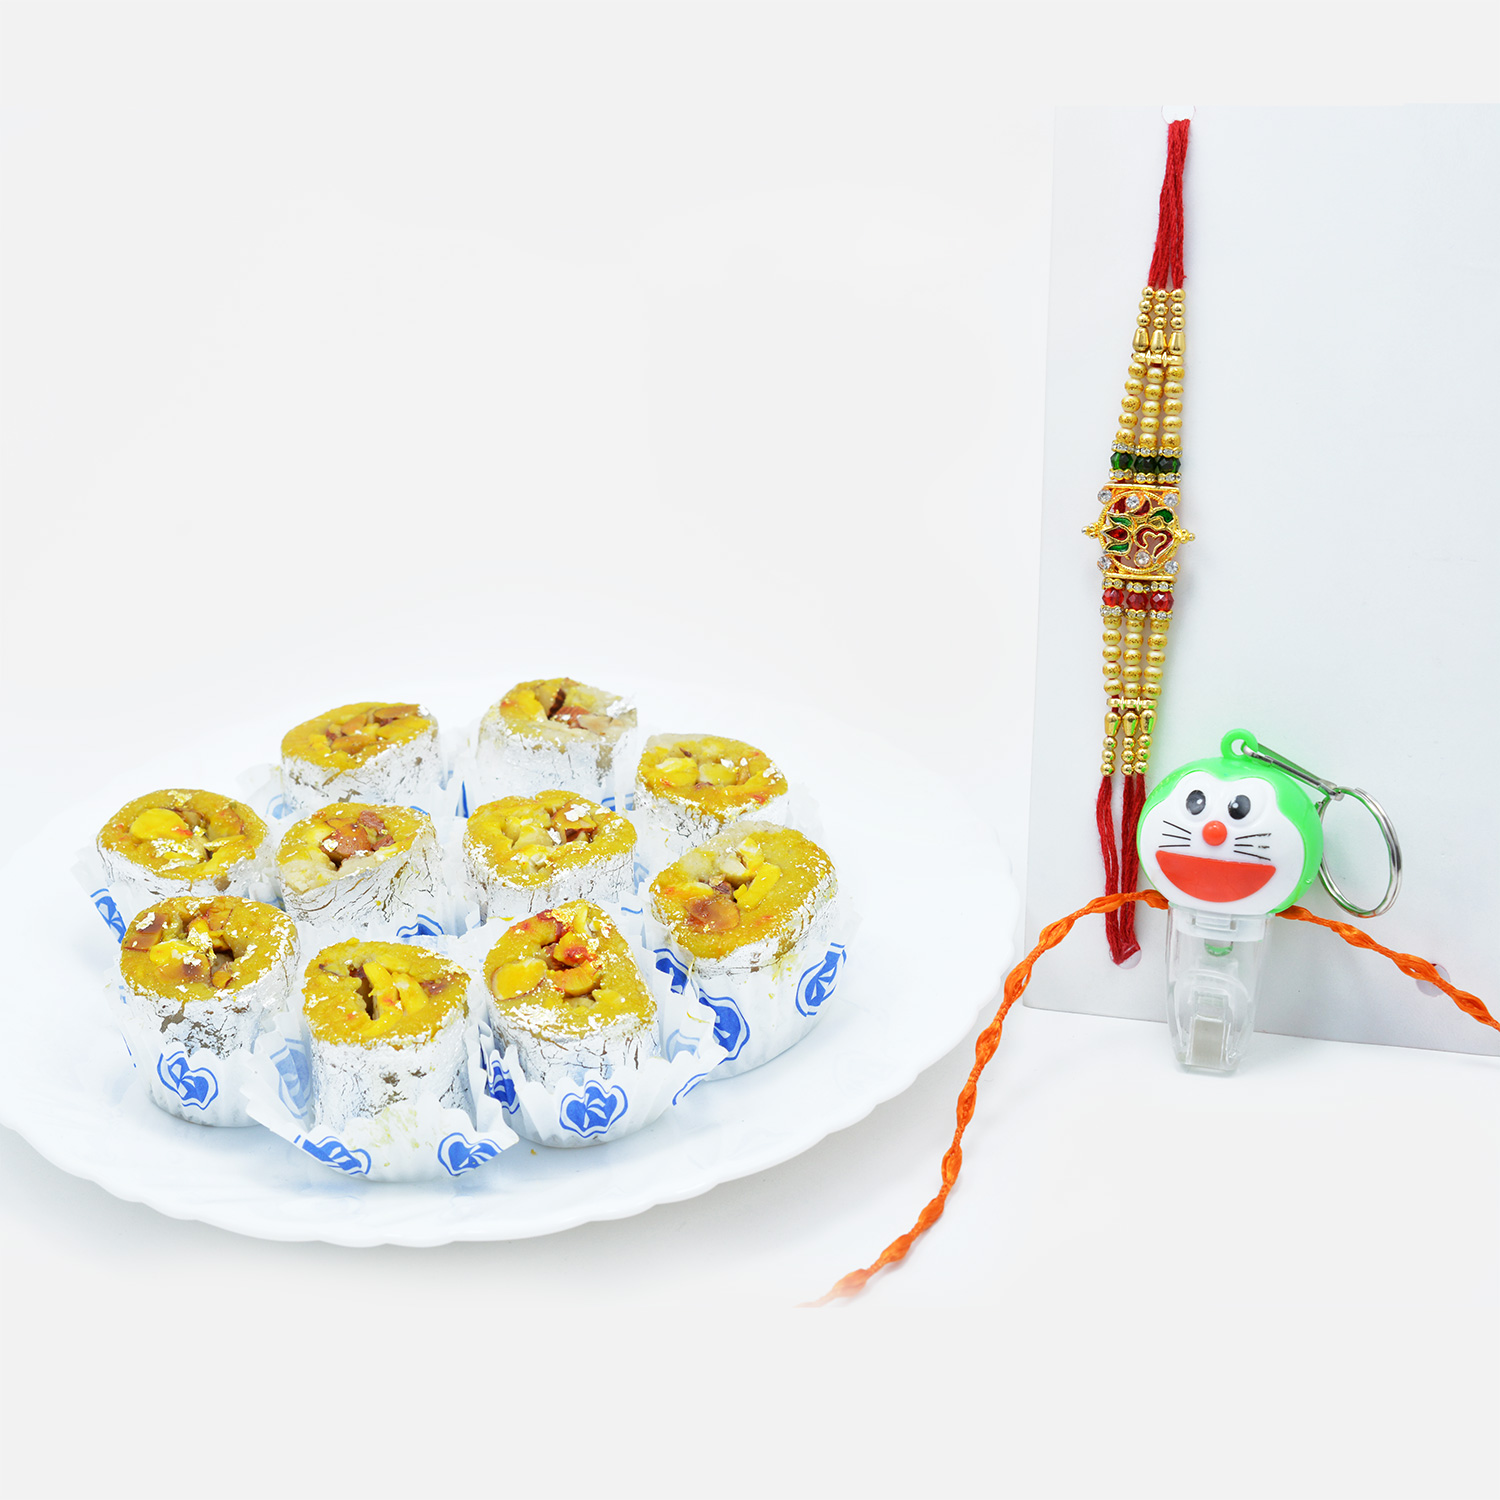 Led Doraemon and OM Rakhi Set of 2 with Flavourful Kaju Honey Dew